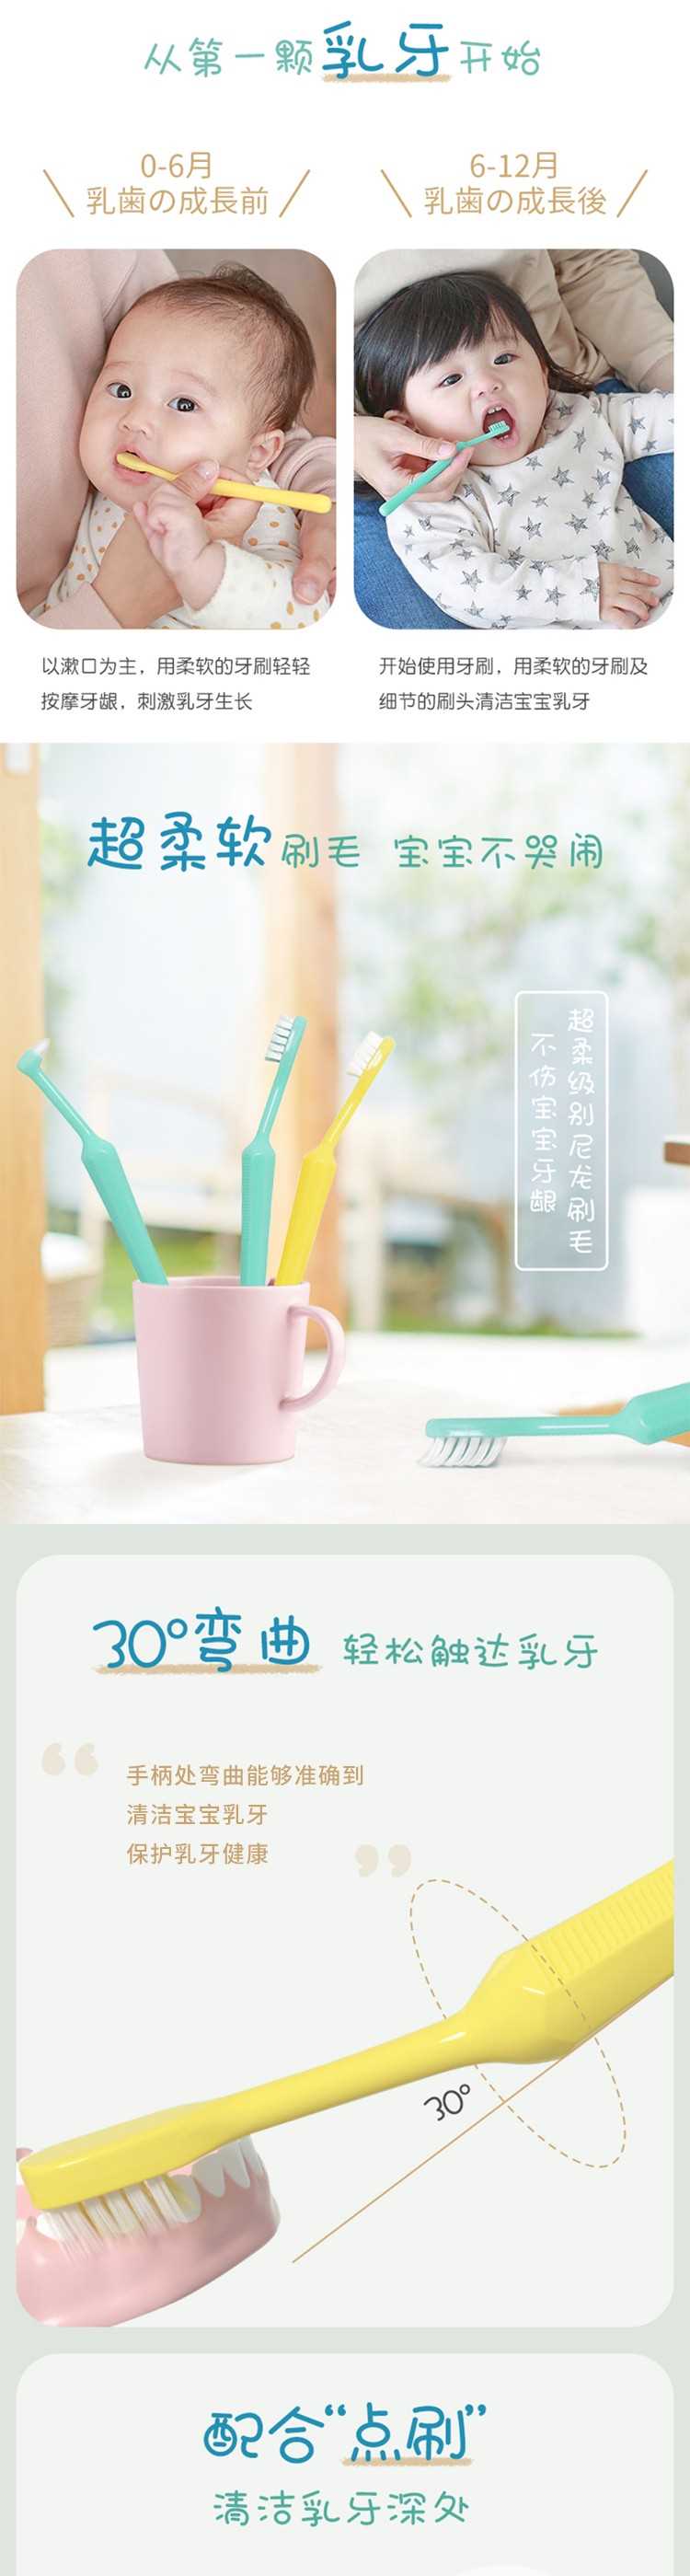 【日本直效郵件】PIGEON貝親 嬰幼兒專用前牙齦按摩牙刷 1支